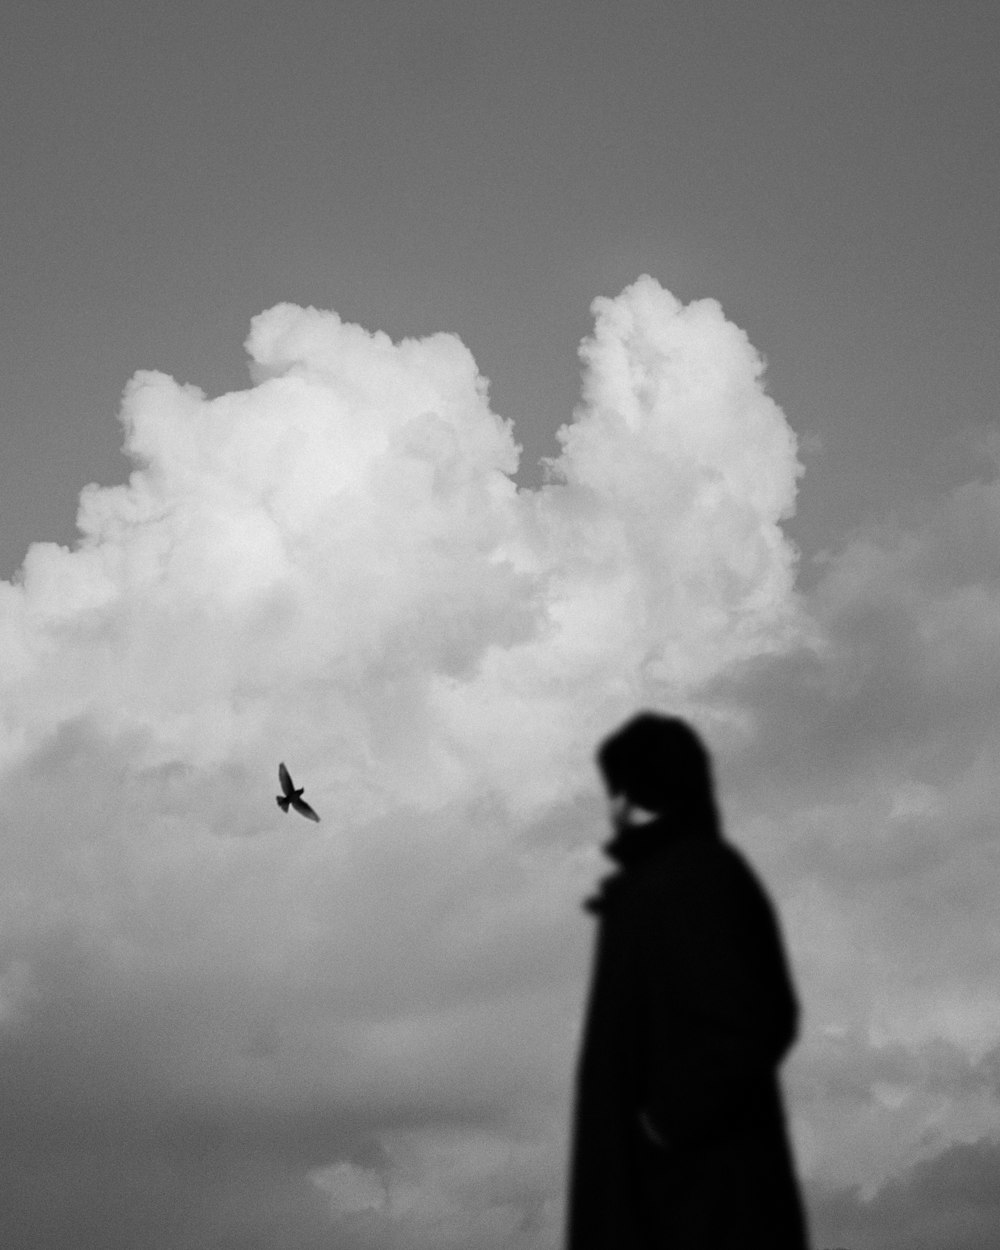 Photographie en niveaux de gris de la silhouette d’une personne et d’un oiseau